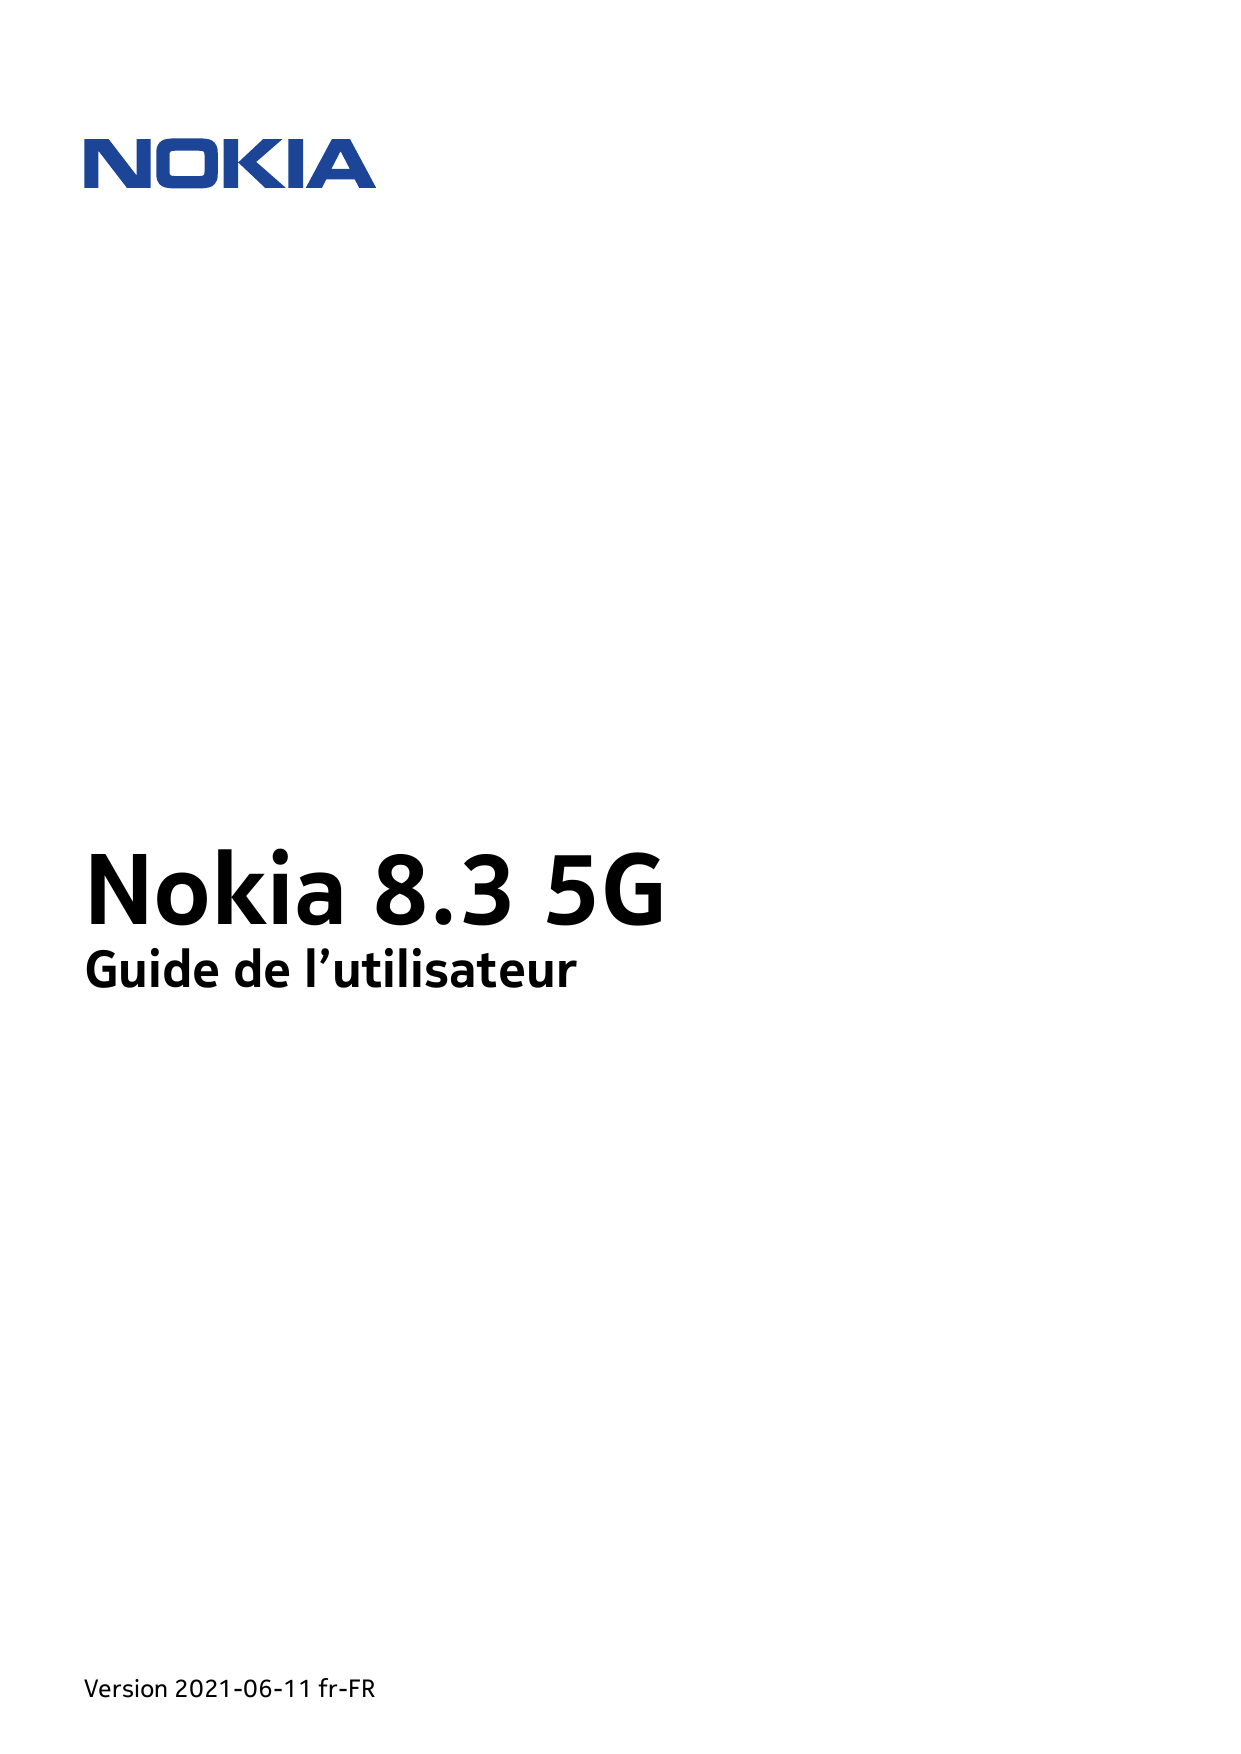 Nokia 8.3 5GGuide de l’utilisateurVersion 2021-06-11 fr-FR